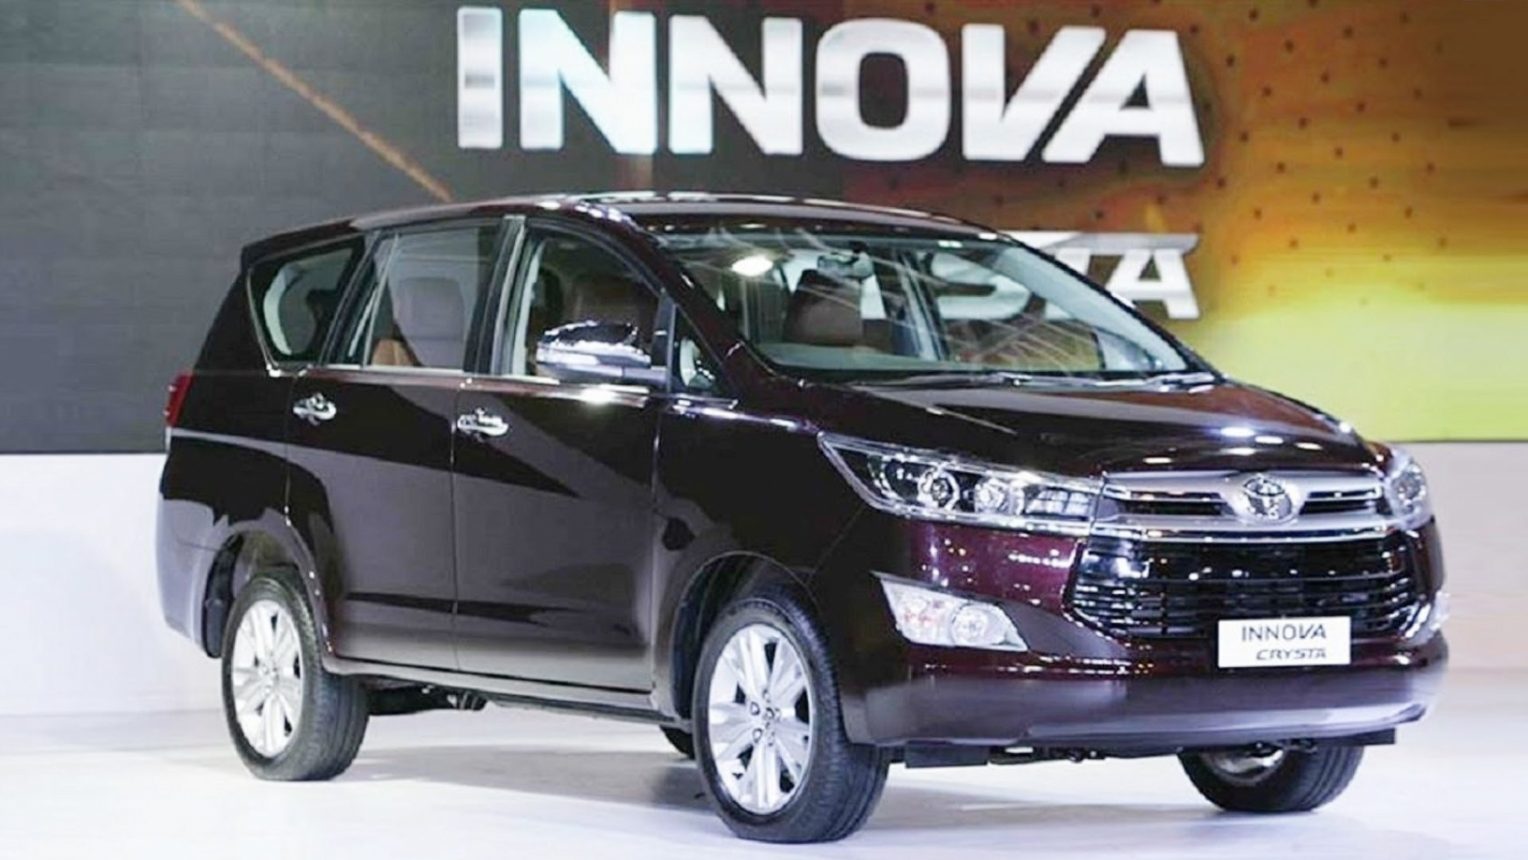 Mua bán xe Toyota Innova 2019 cũ giá chỉ 625 triệu đồng trên toàn quốc